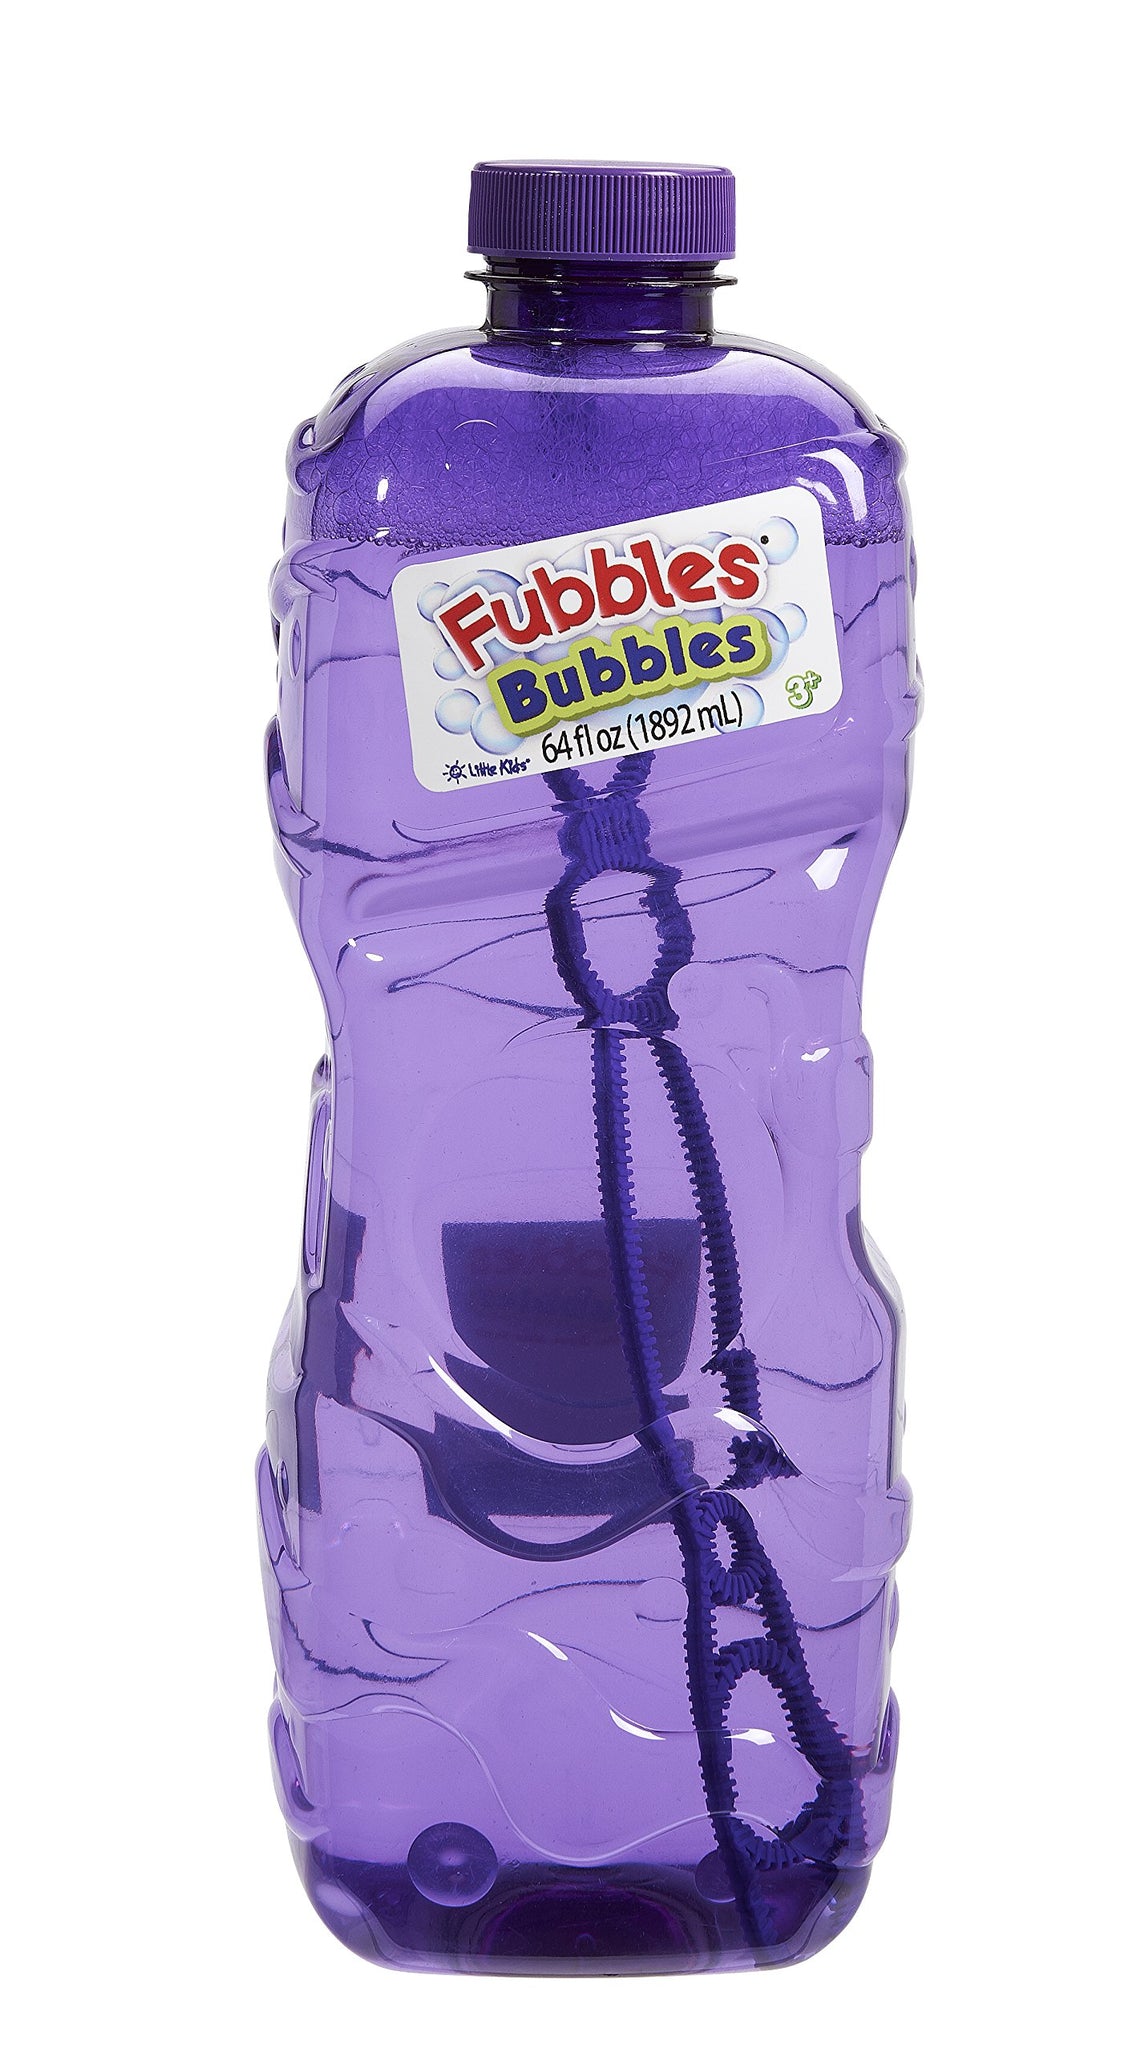 Little Kids Fubbles Premium Long Lasting Bubble Solution, Assorted Colors, 64 oz